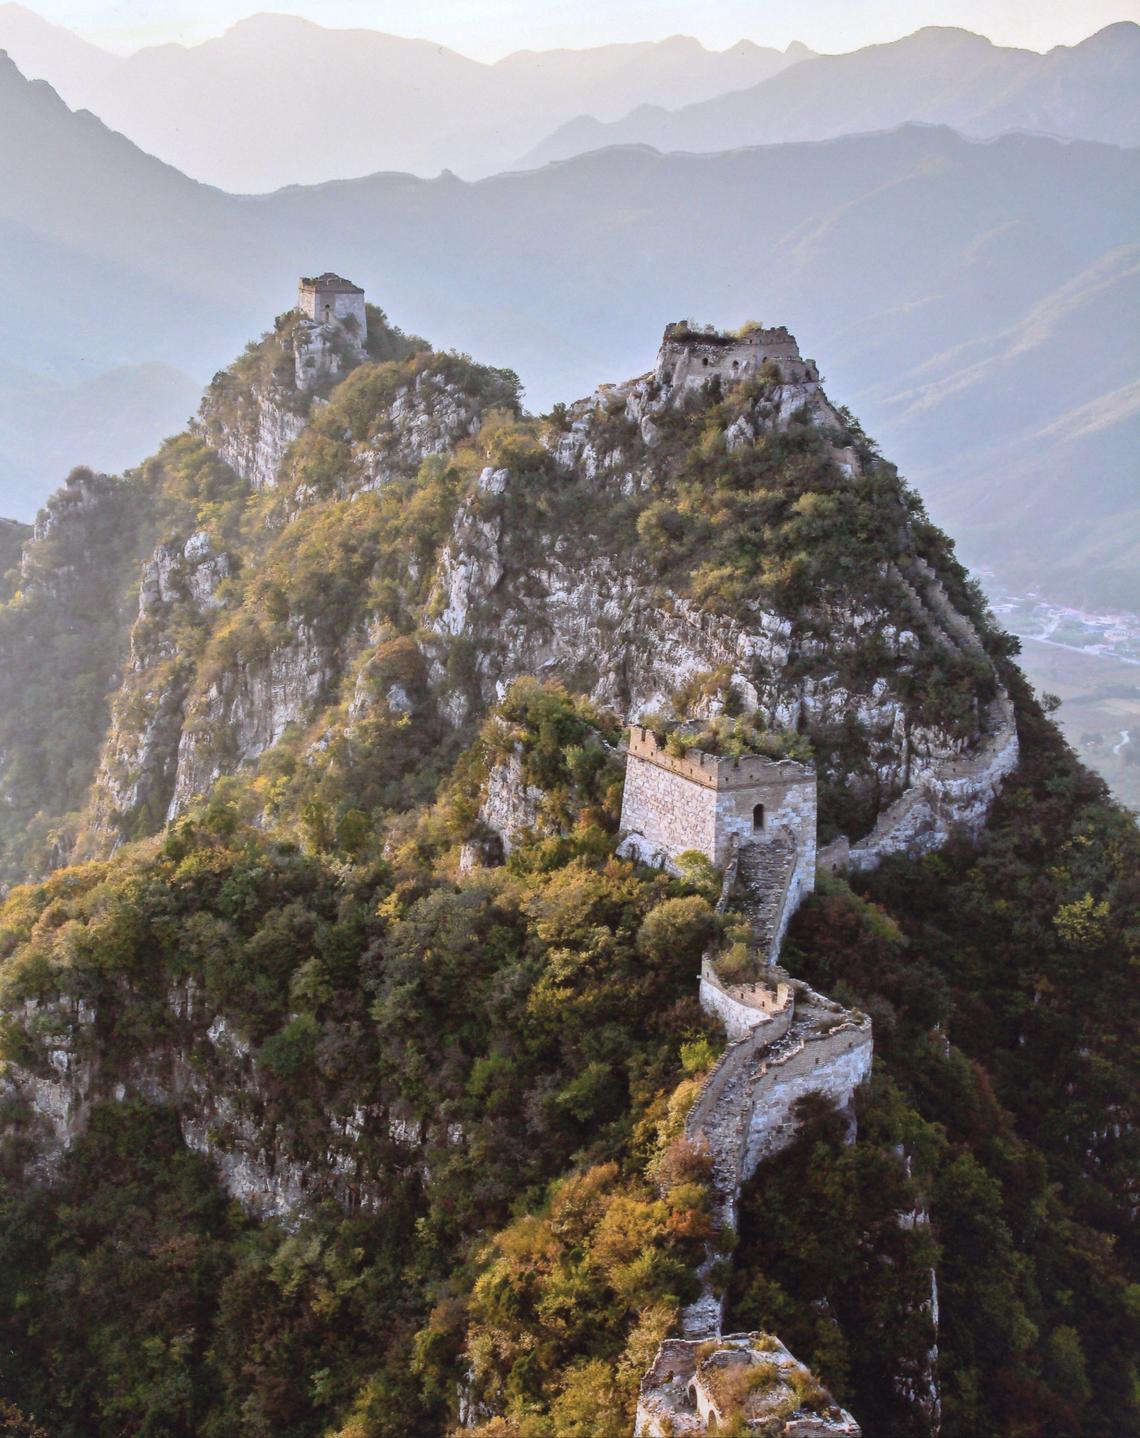 Jiankou - The Great Wall of China